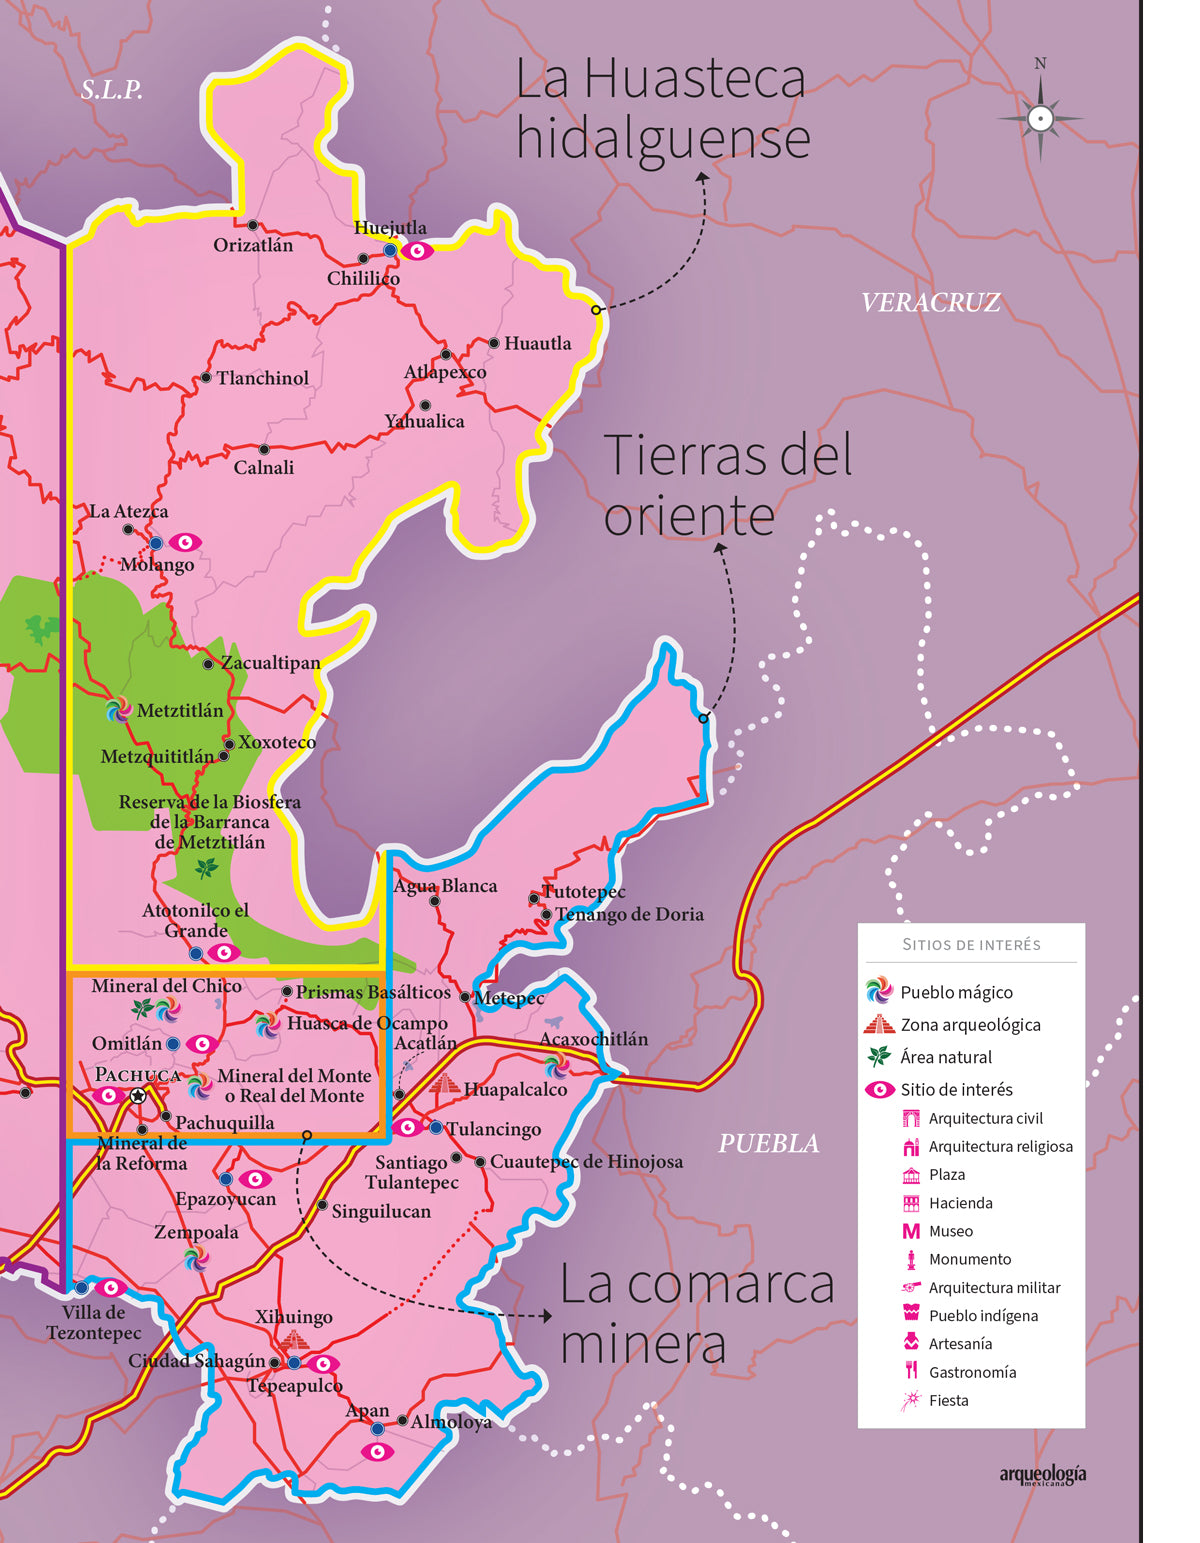 El estado de Hidalgo. Guía de viajeros